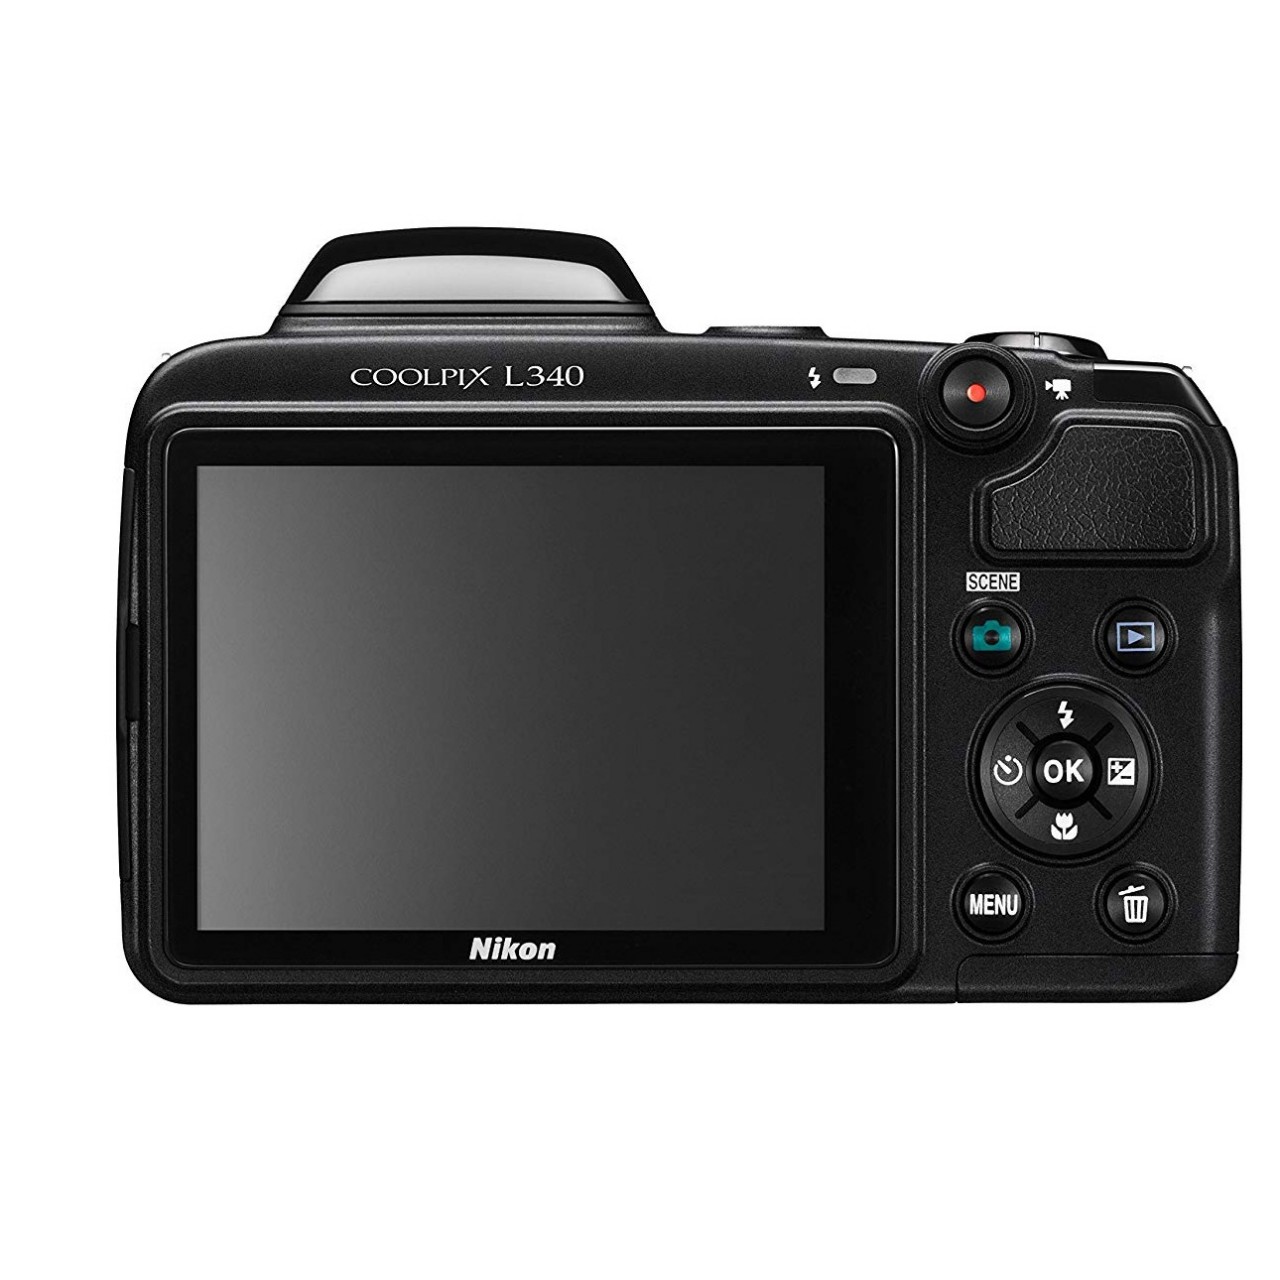 NIKON L-340 Coolpix Digital Camera With 28x Optical Zoom - 20.2 Mega Pixels